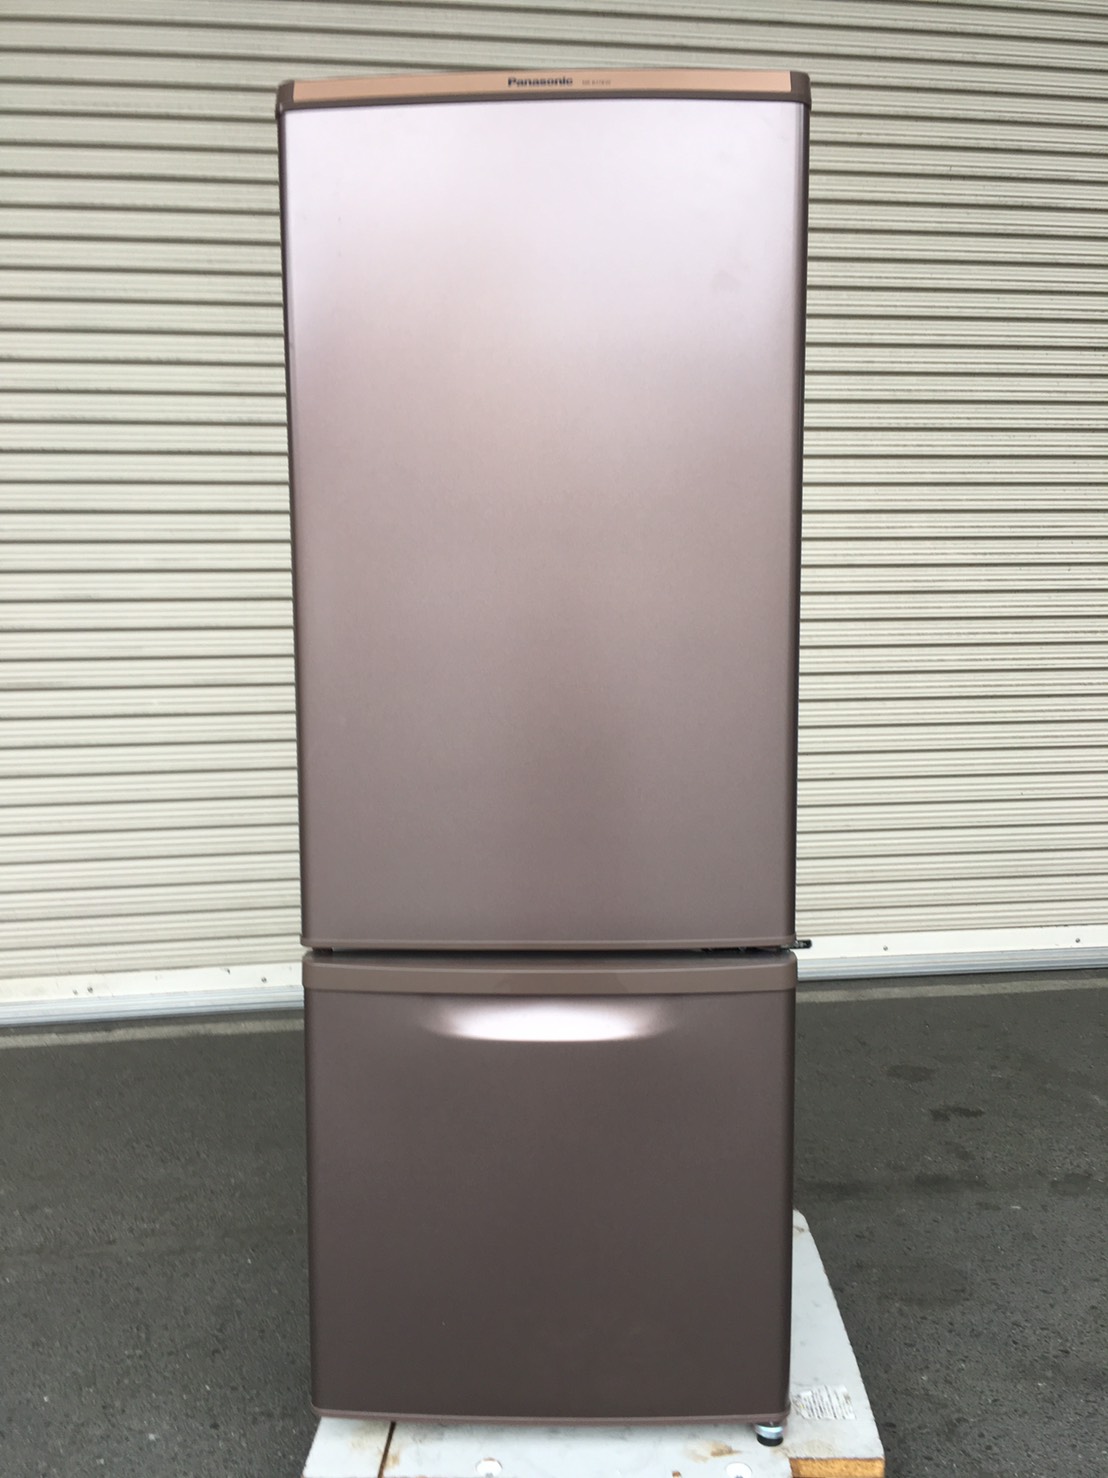 パナソニック製の冷蔵庫（NR-B178W-T）